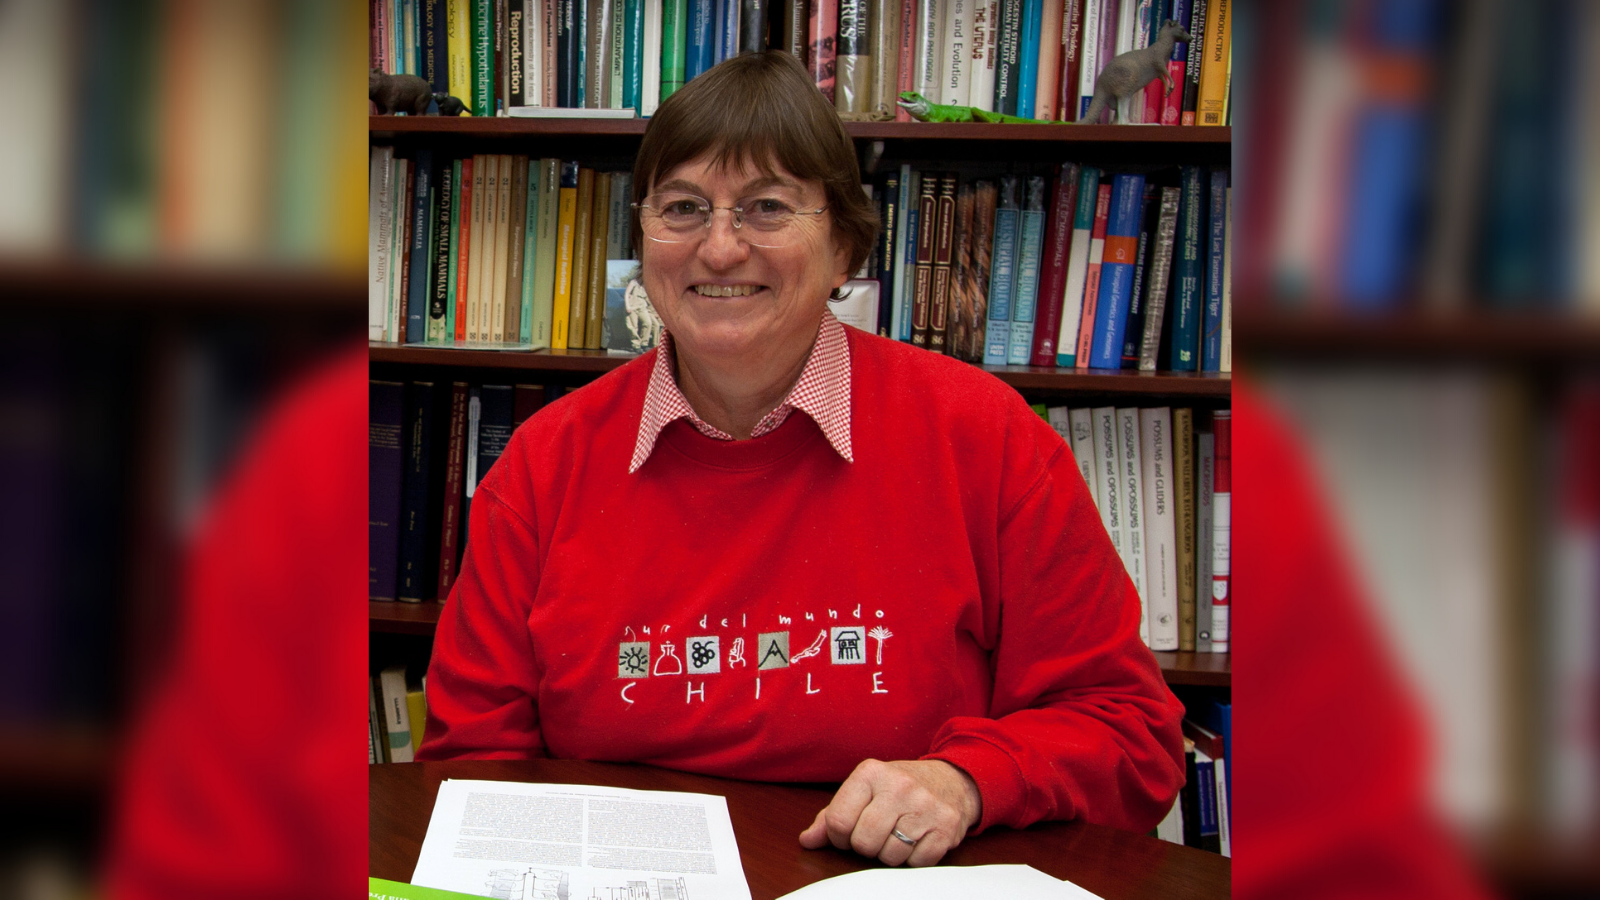 Professor Marilyn Renfree, FRS